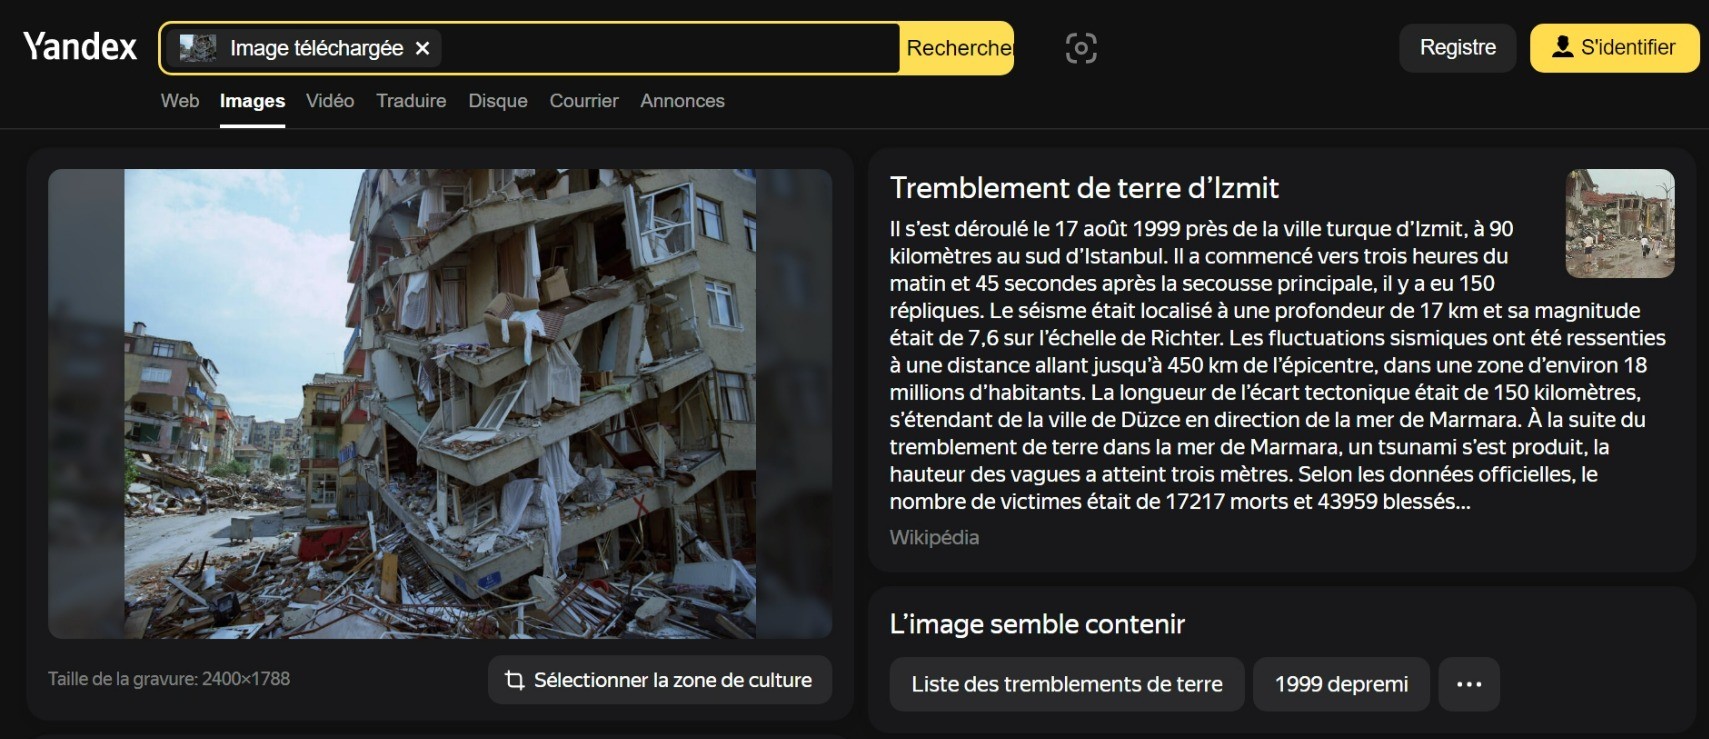 Capture d'écran d'une recherche avec Yandex avec russe traduit en français.